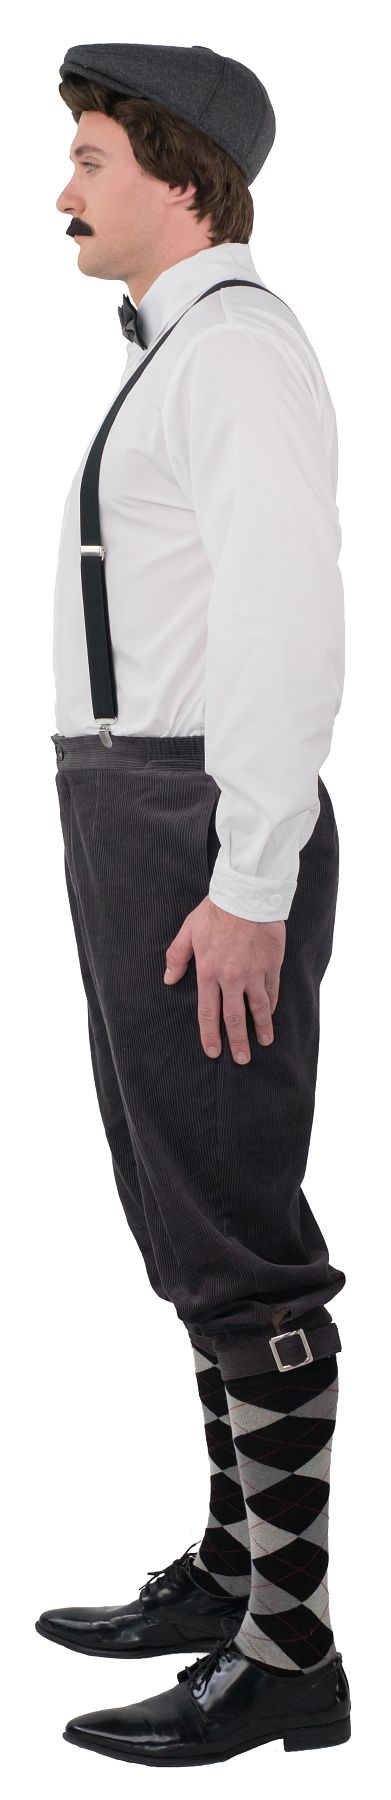 Knickerbocker pants, grey